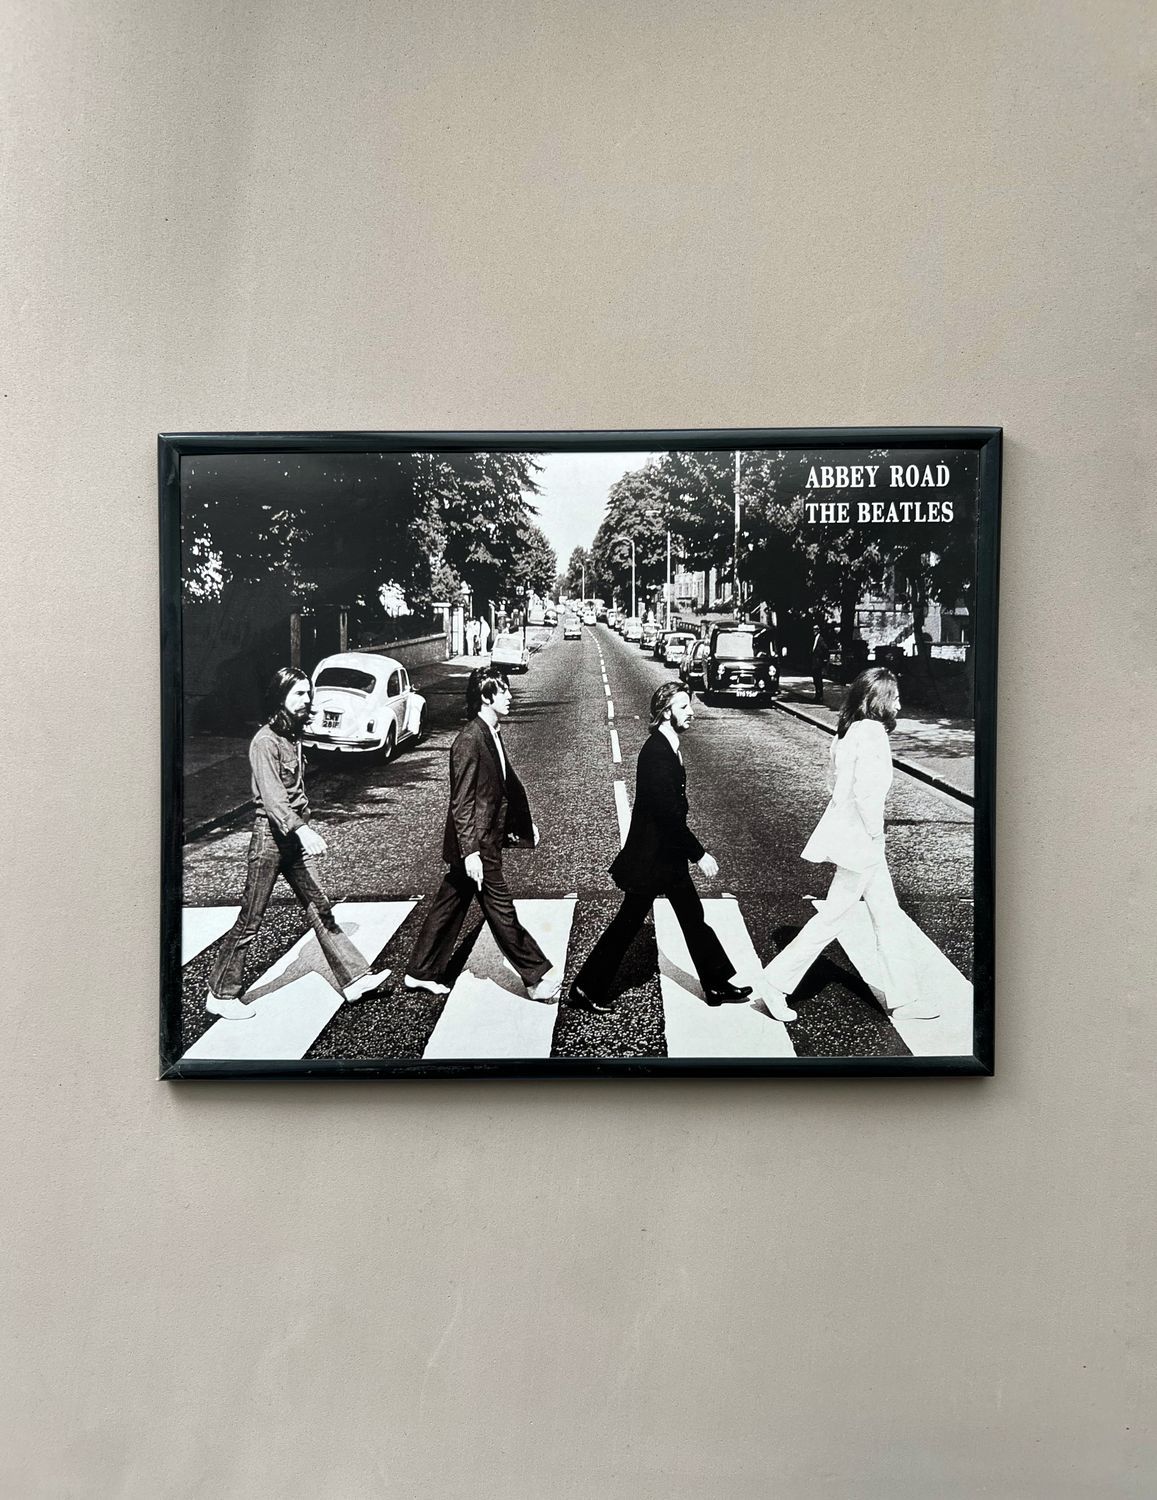 The Beatles на пешеходном переходе через Abbey Road, Фотокартины, Санкт-Петербург,  Фото №1